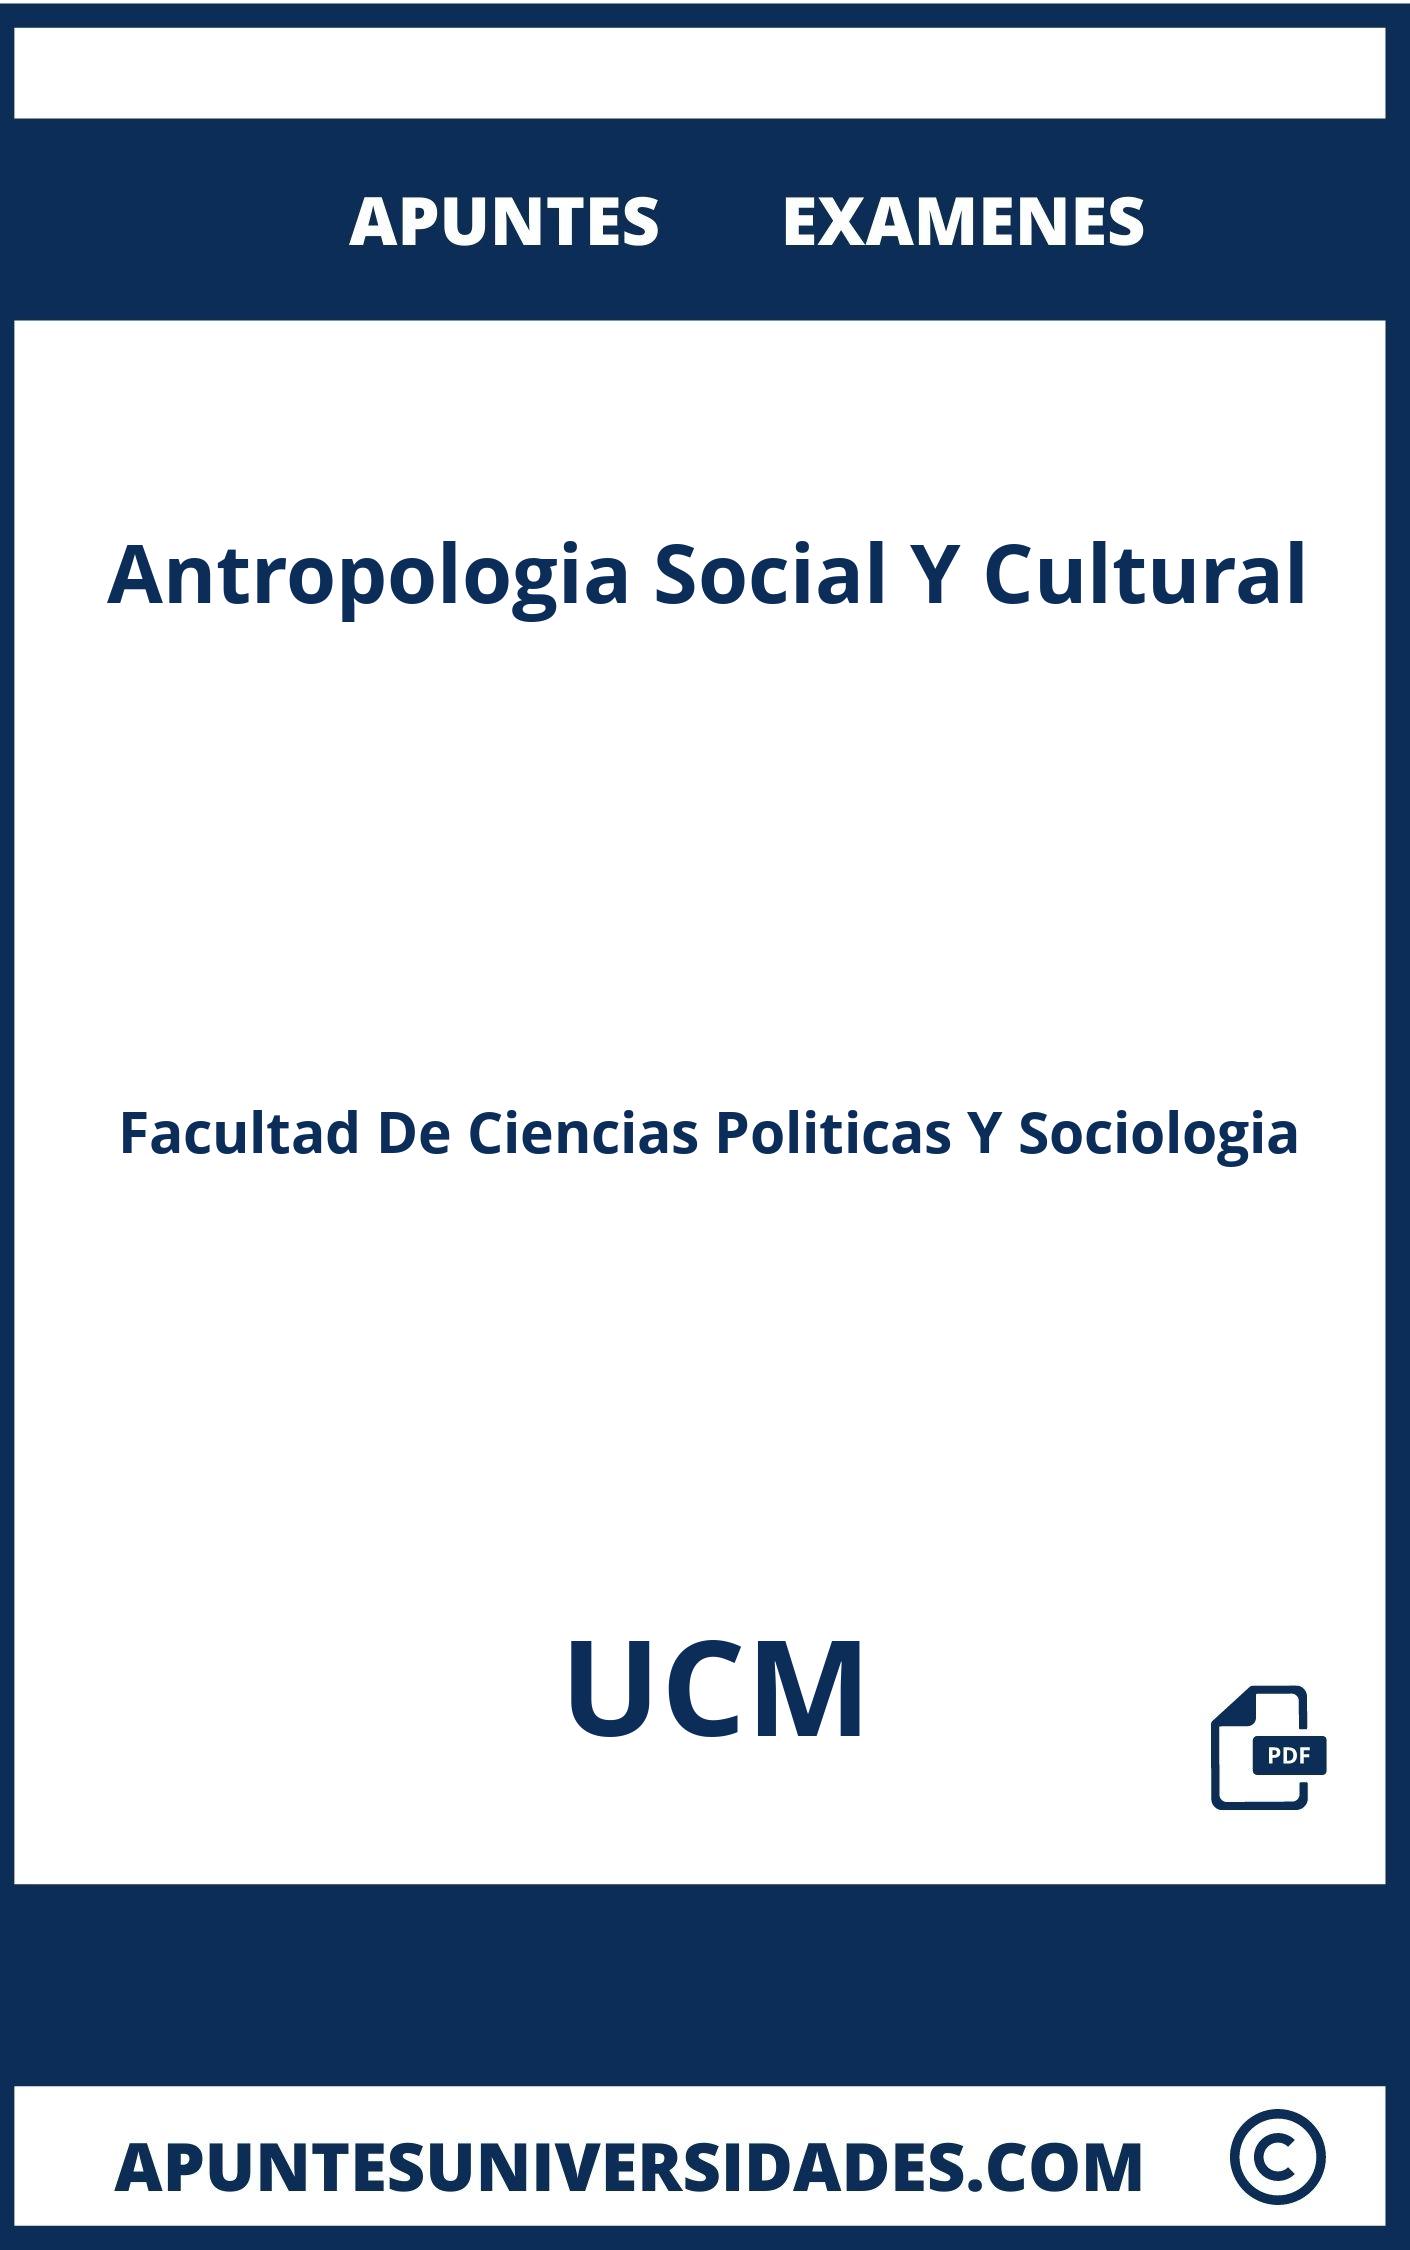 Examenes Antropologia Social Y Cultural UCM y Apuntes